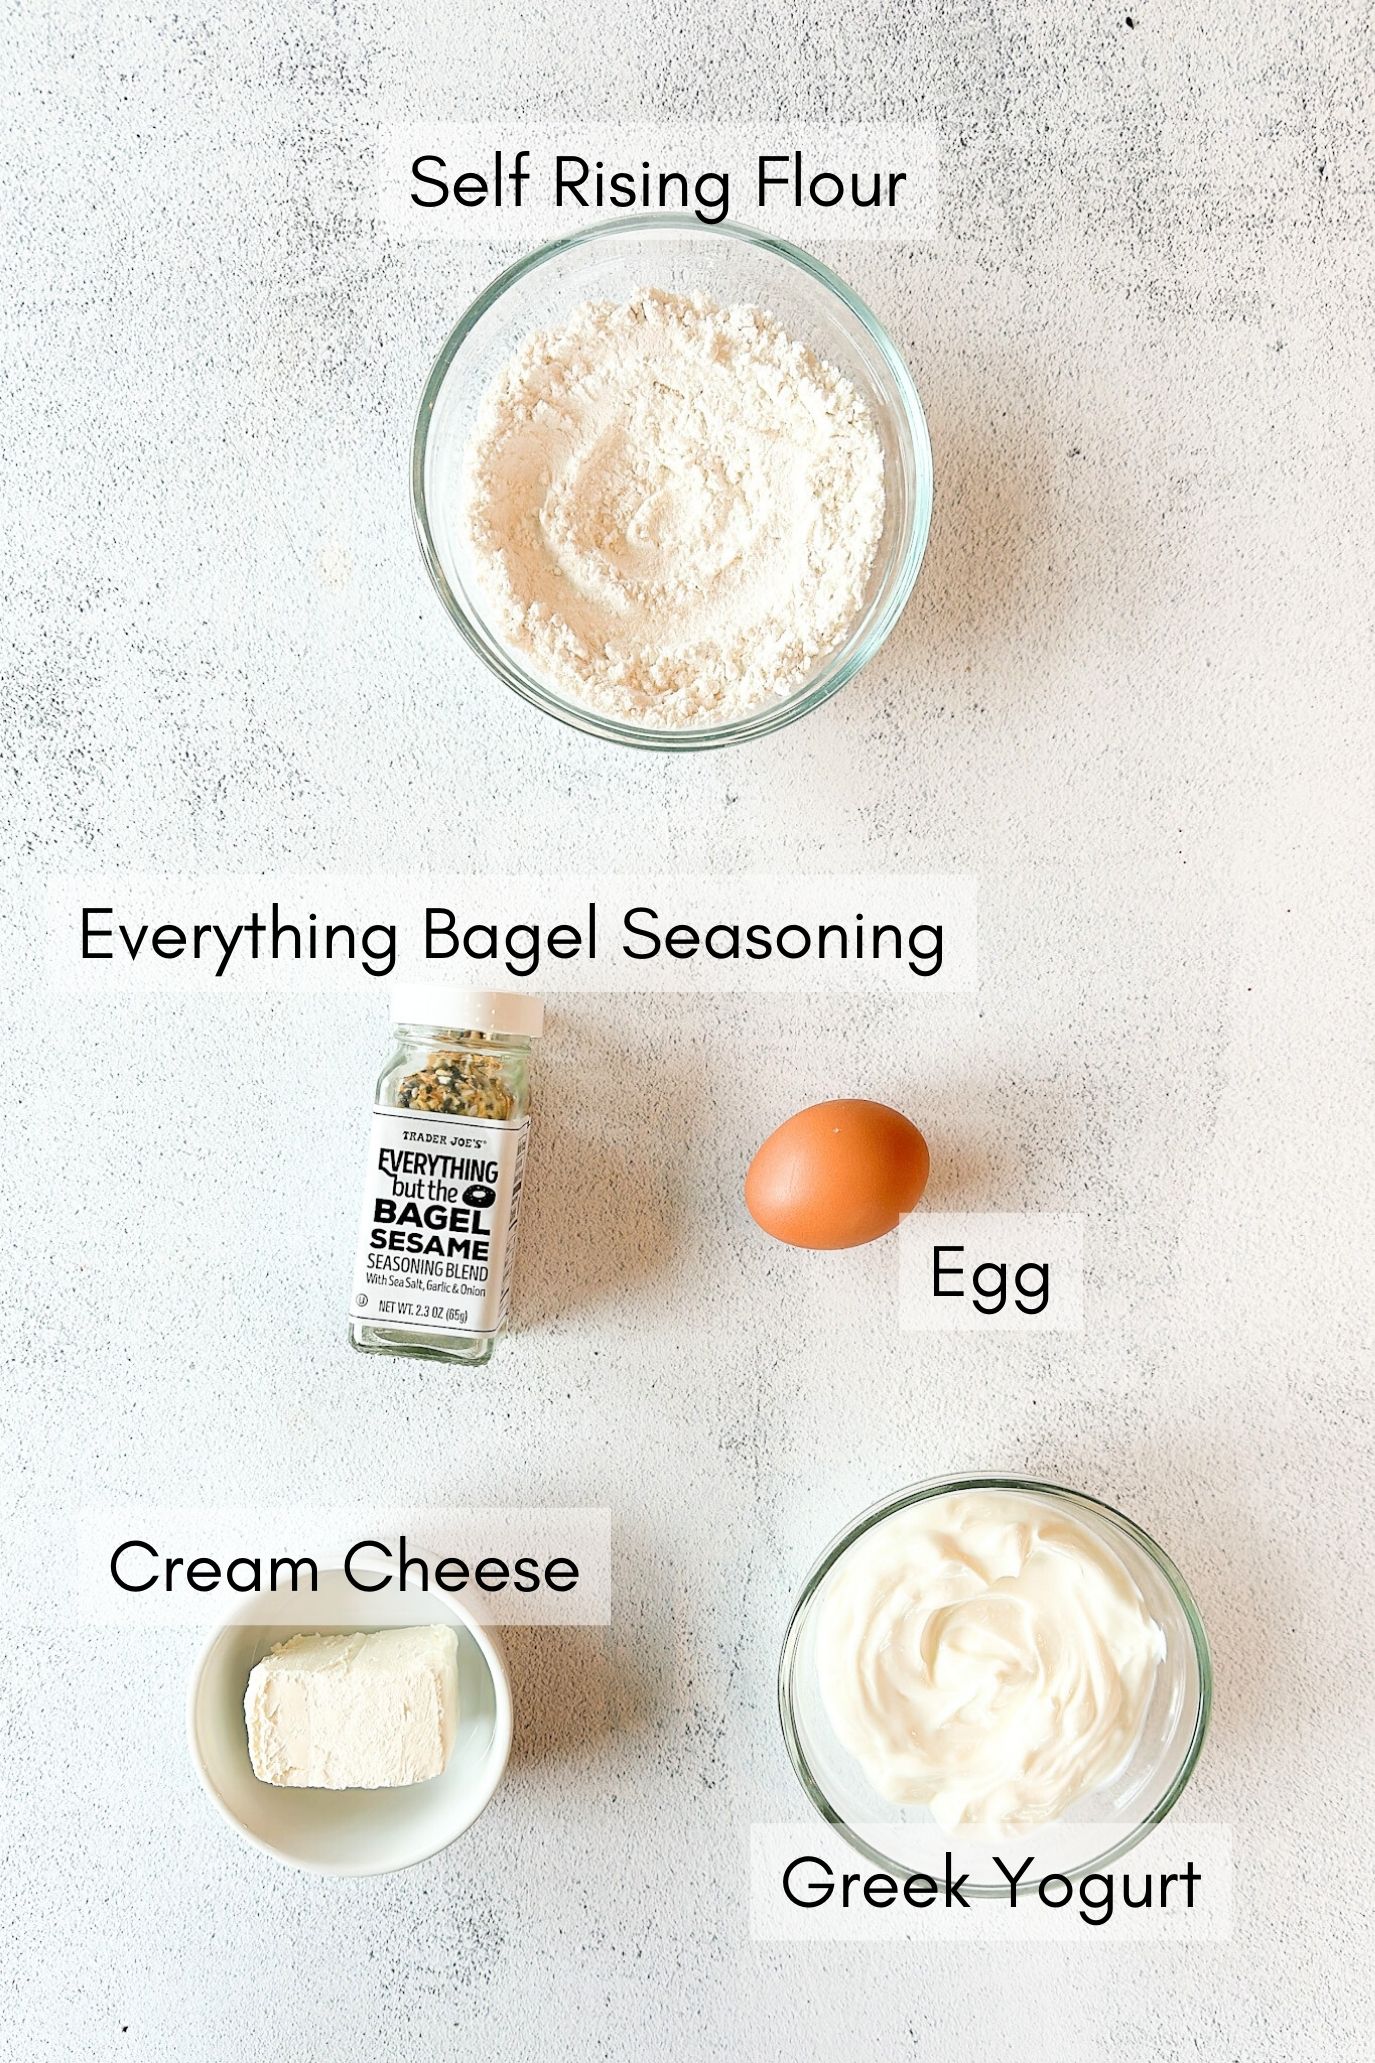 Ingredients to make everything bagel bites.